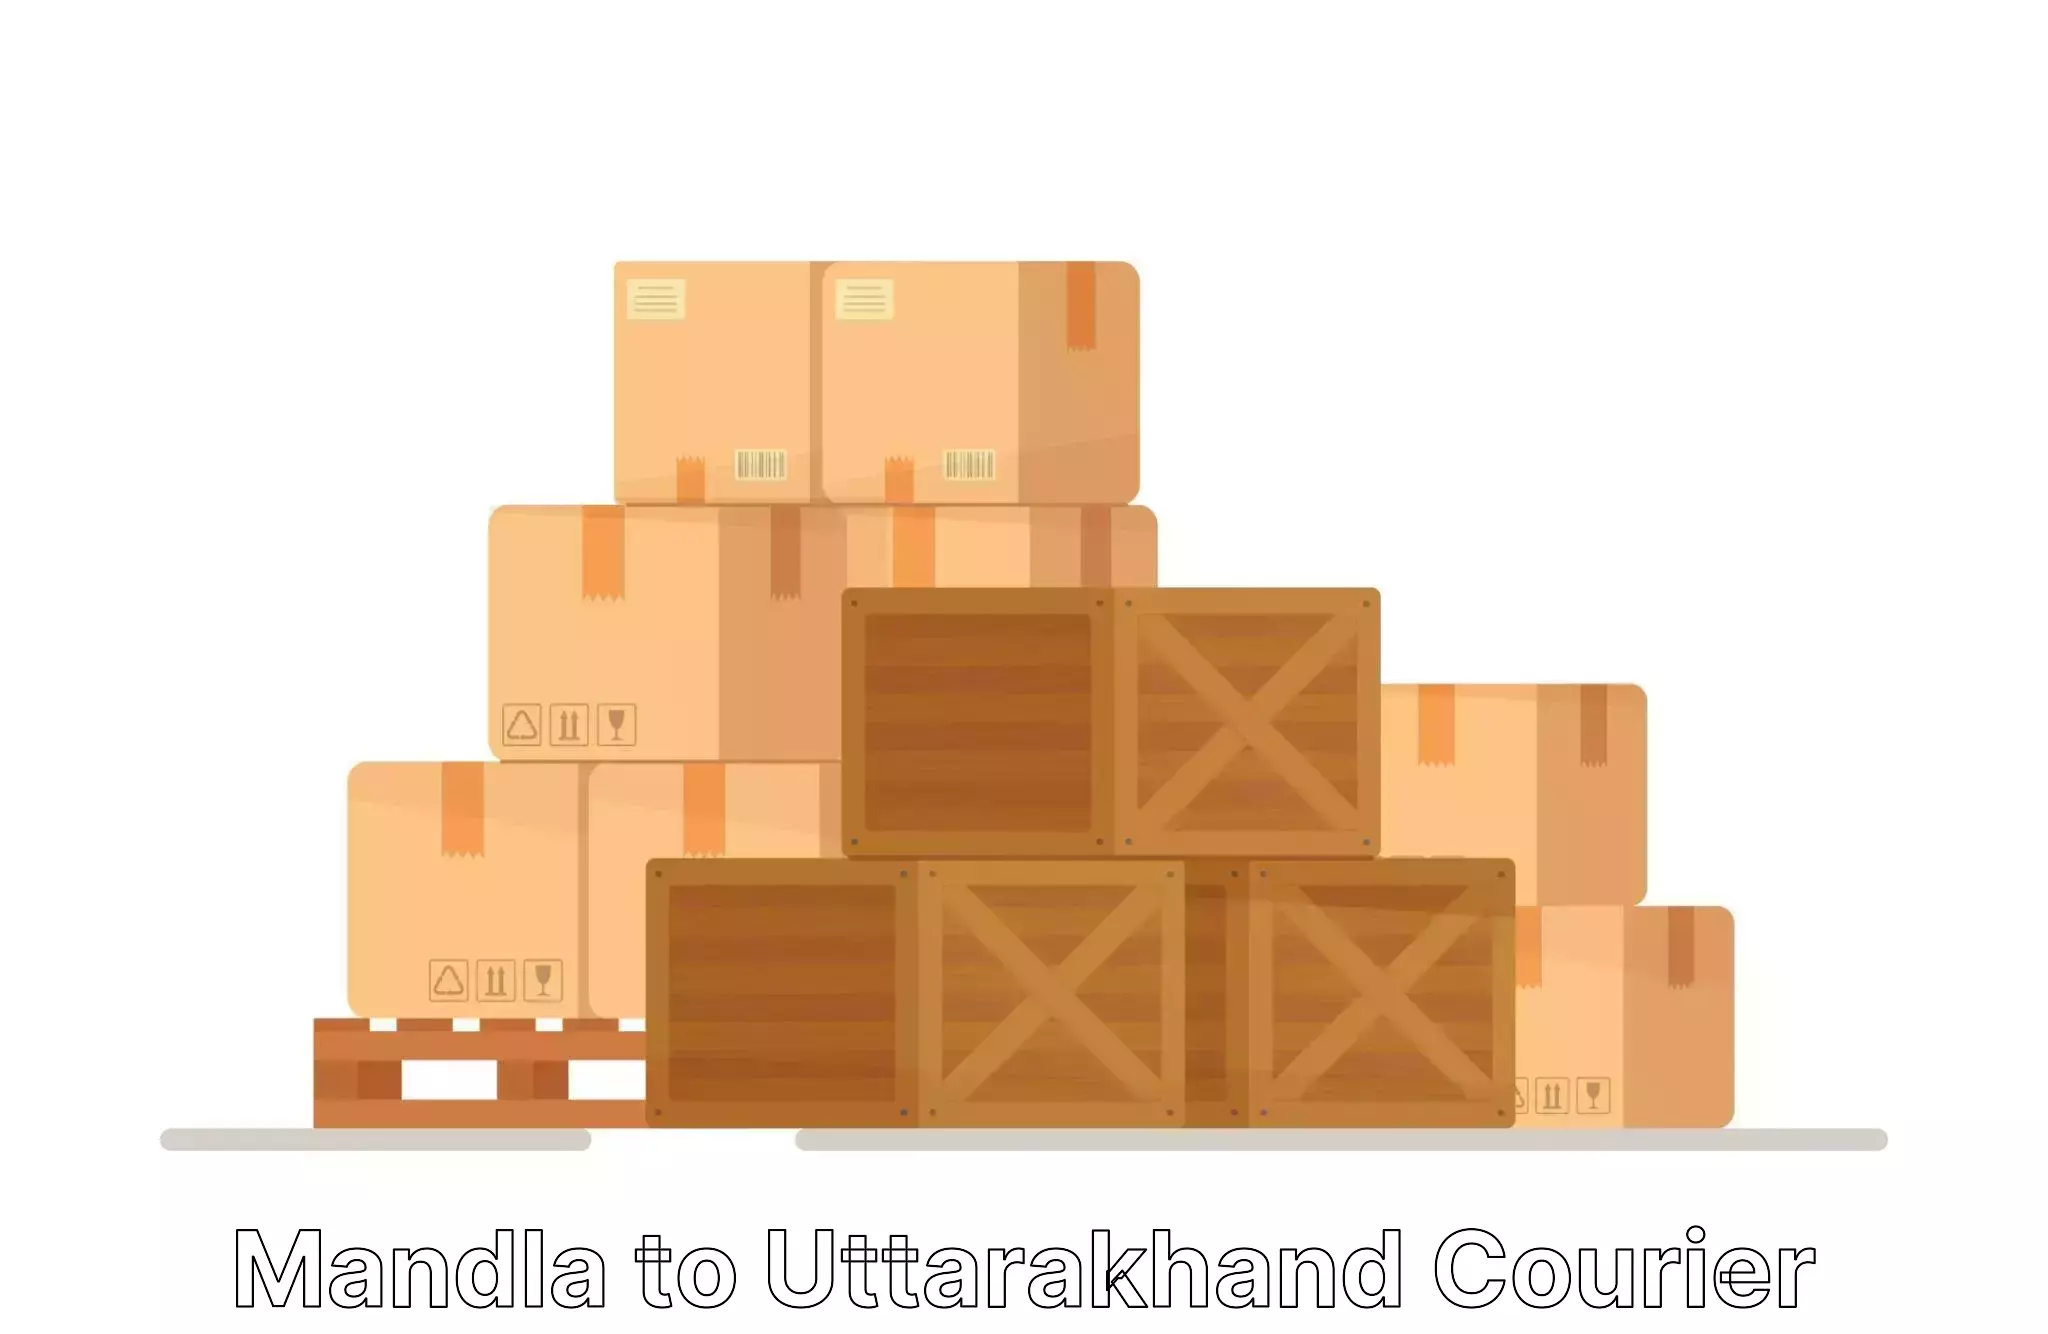 Comprehensive goods transport Mandla to Someshwar